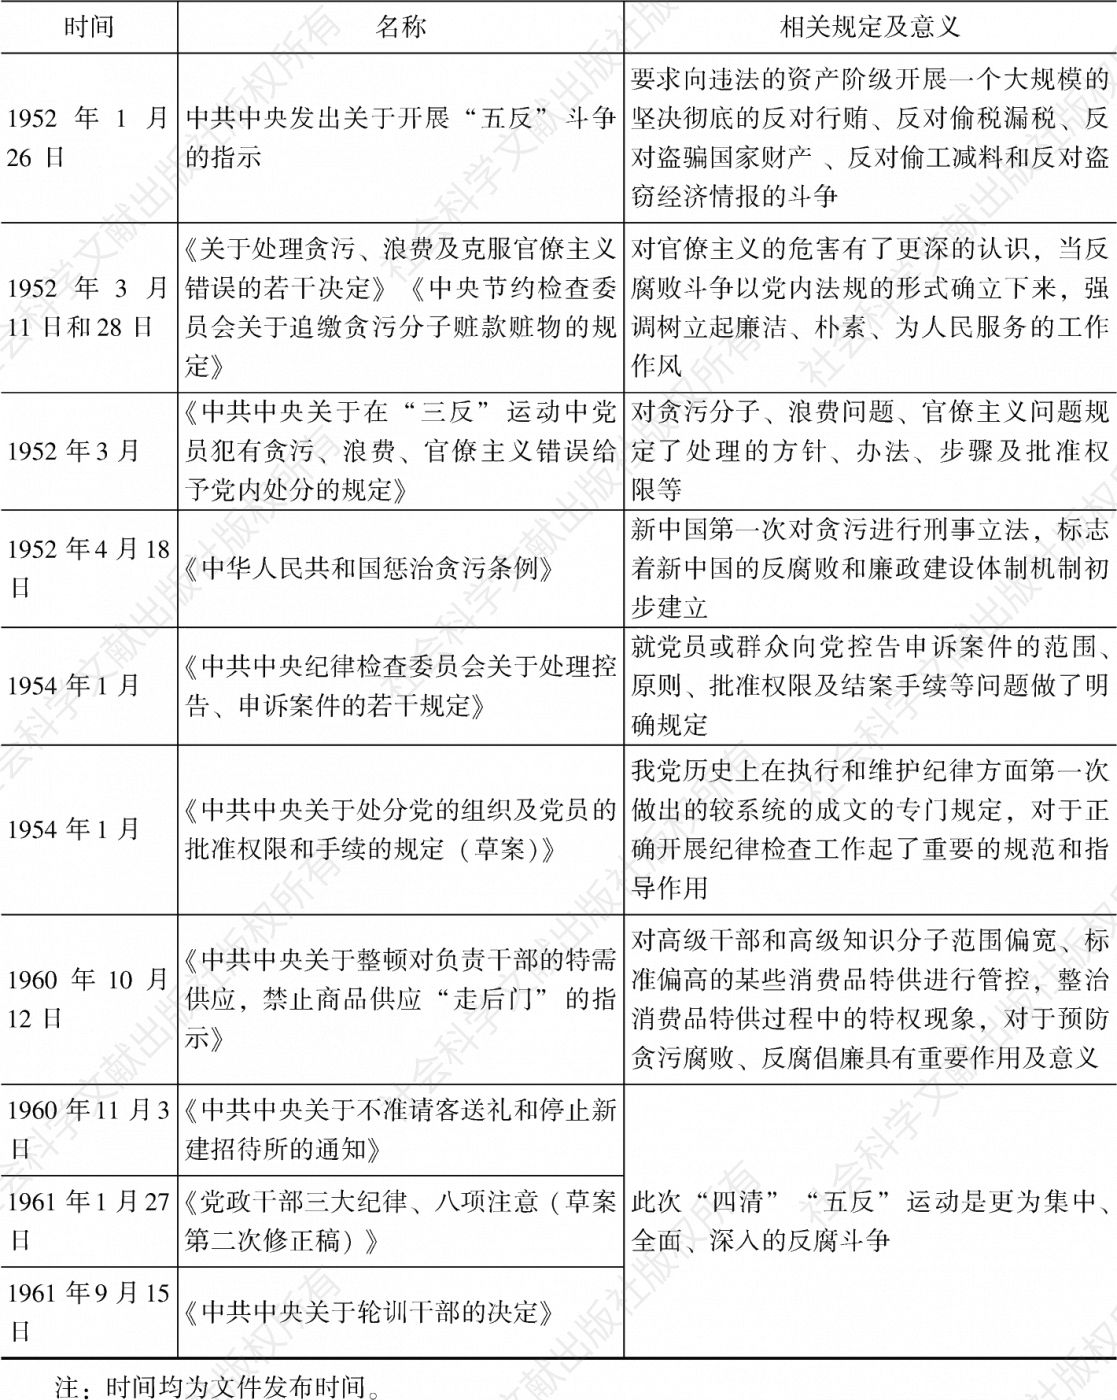 表2 新中国成立至改革开放前关于治理腐败的党内法规-续表